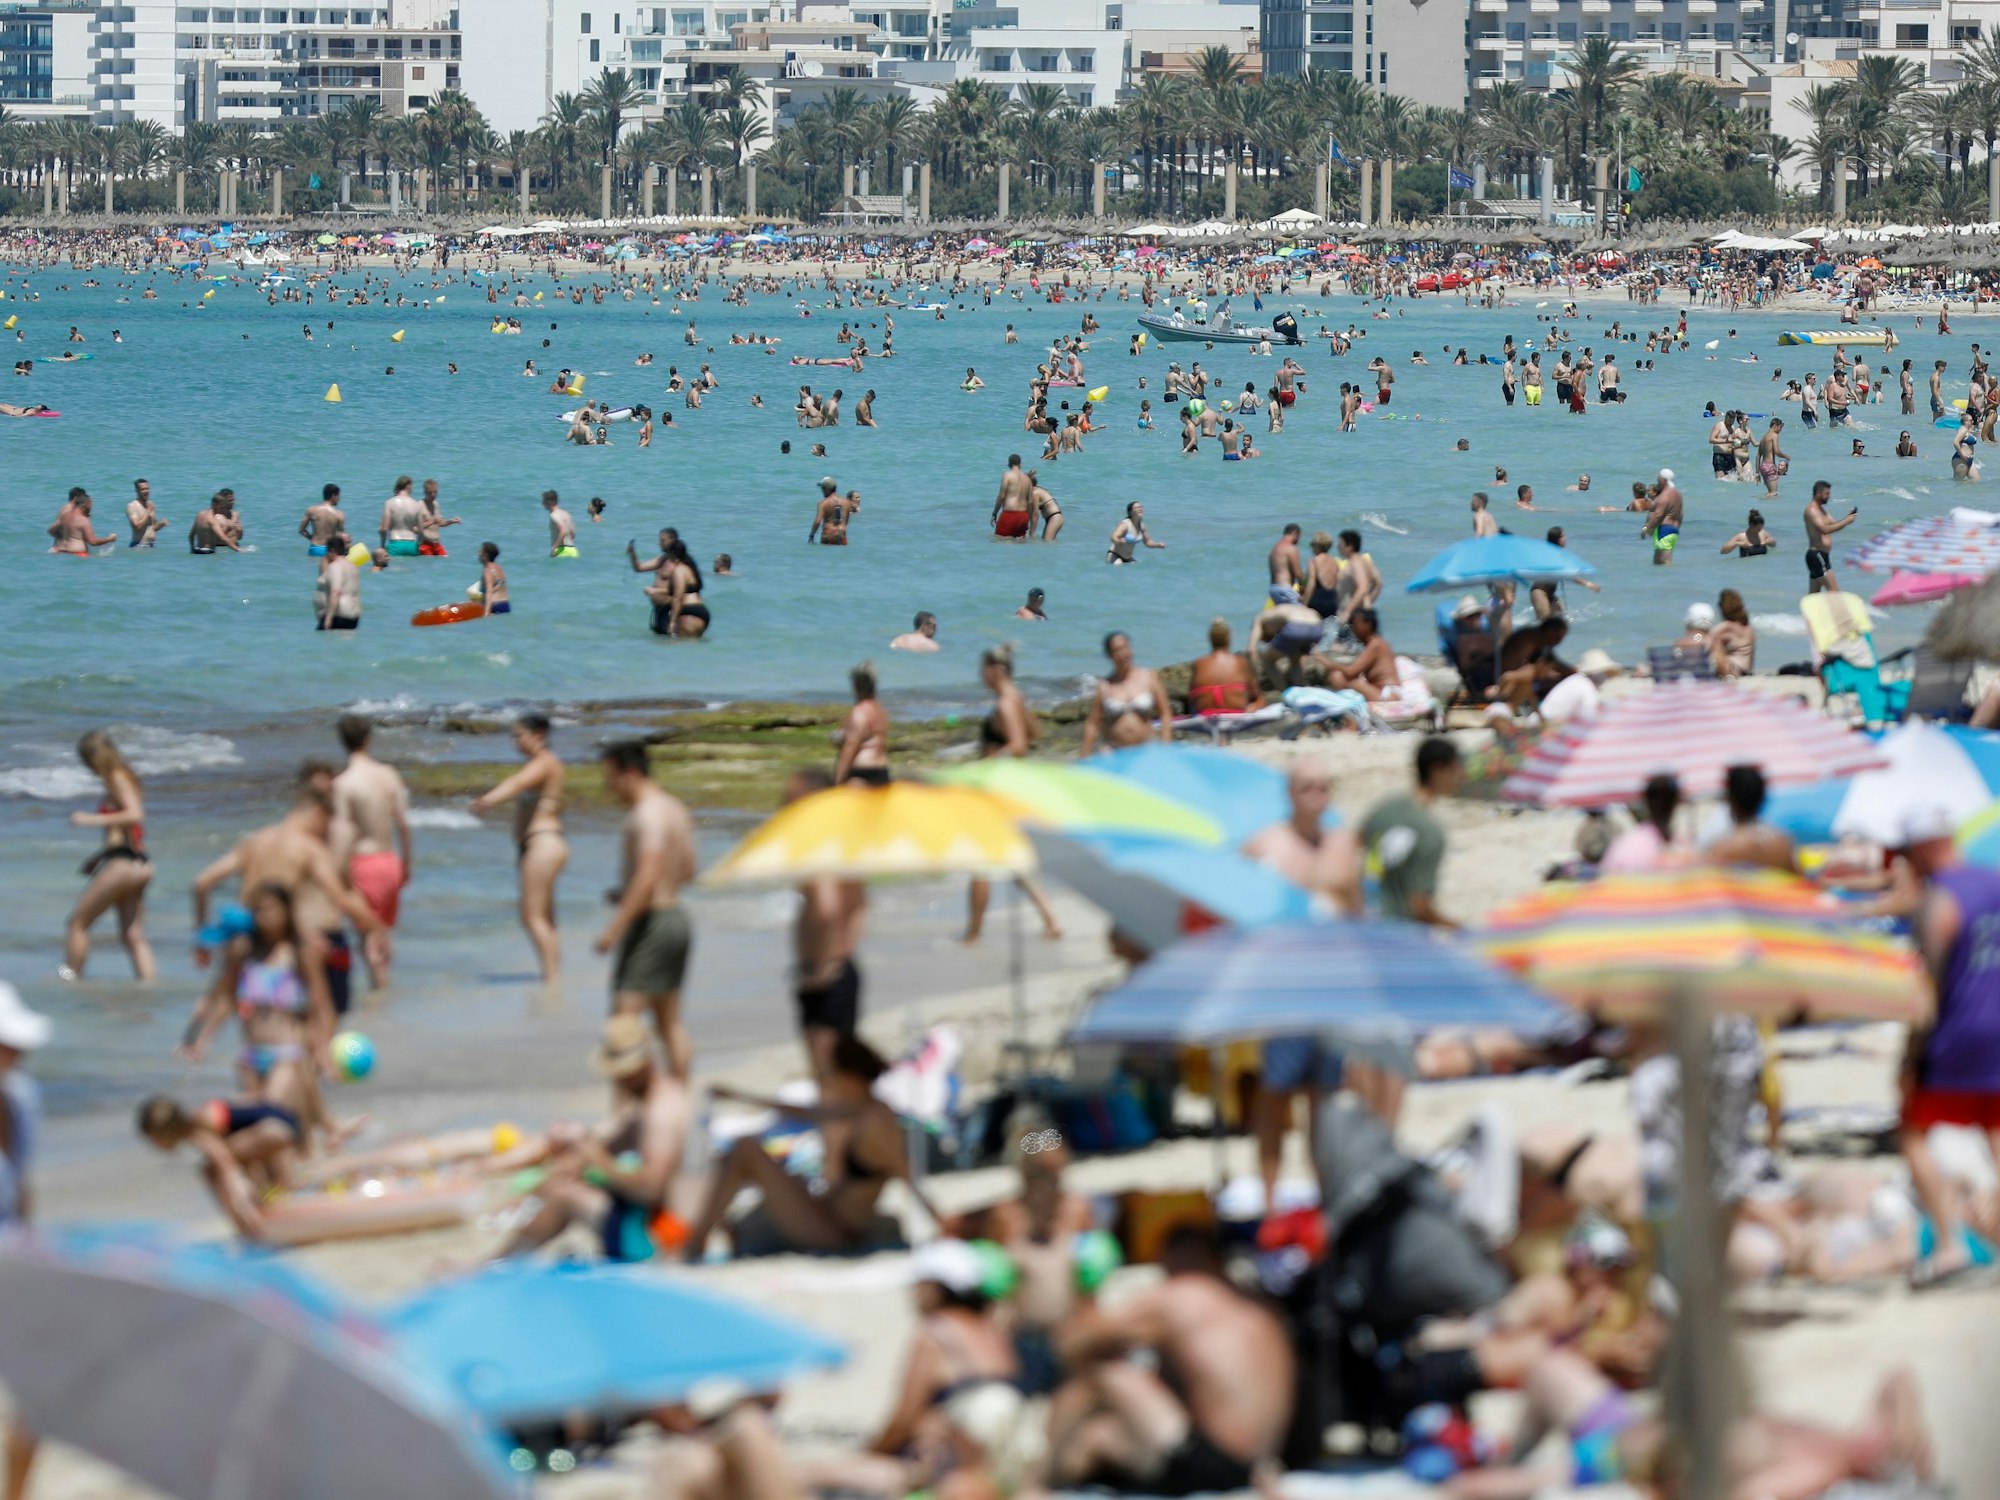 Menschen baden und sonnen sich am Strand von Palma de Mallorca im Juli 2022. Das „Forbes Magazine“ kürte Mallorca zum besten Reiseziel für 2023. Deshalb werden für den Sommer mehr US-amerikanische Reisende erwartet.